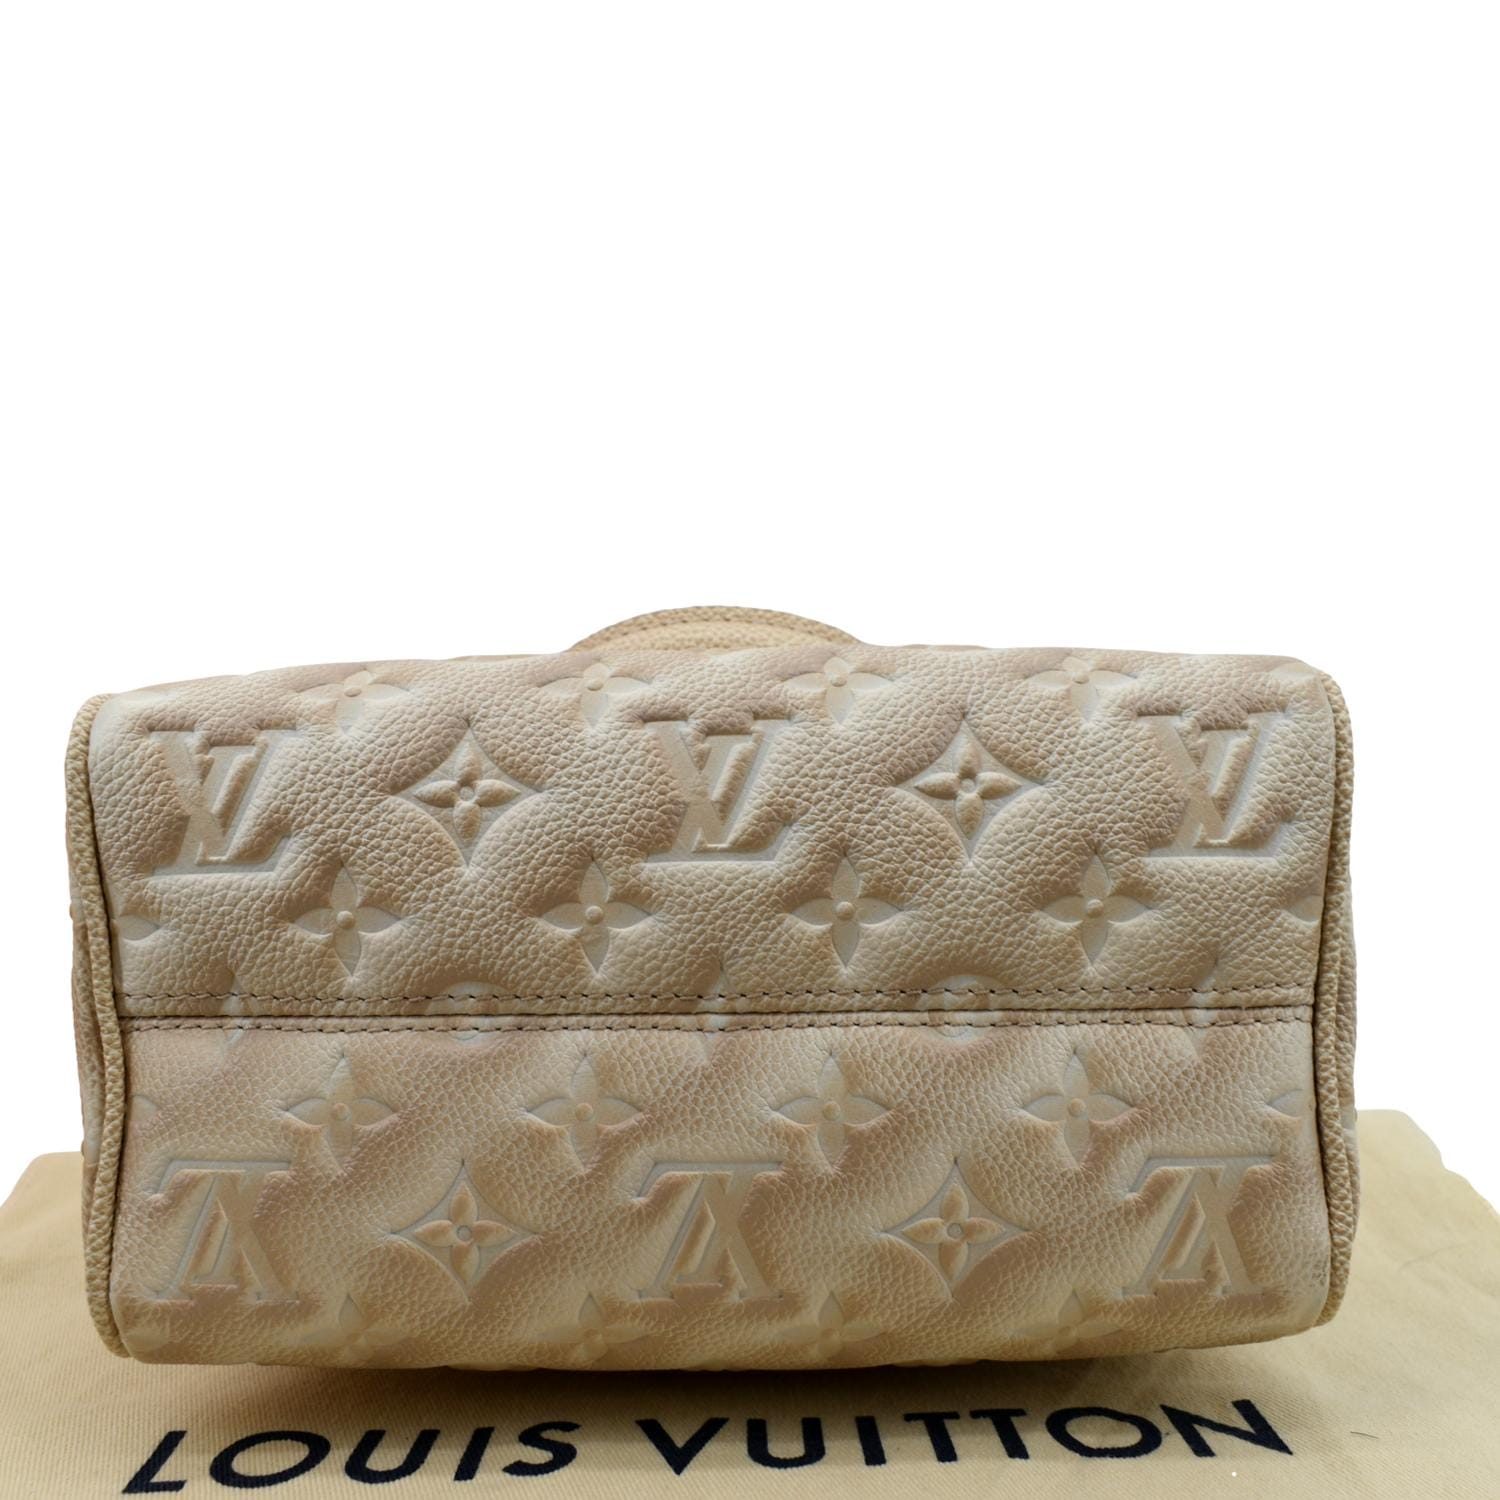 Louis Vuitton Speedy 20 Bandouliere, Stardust Beige, New in Box - WA001 -  Julia Rose Boston